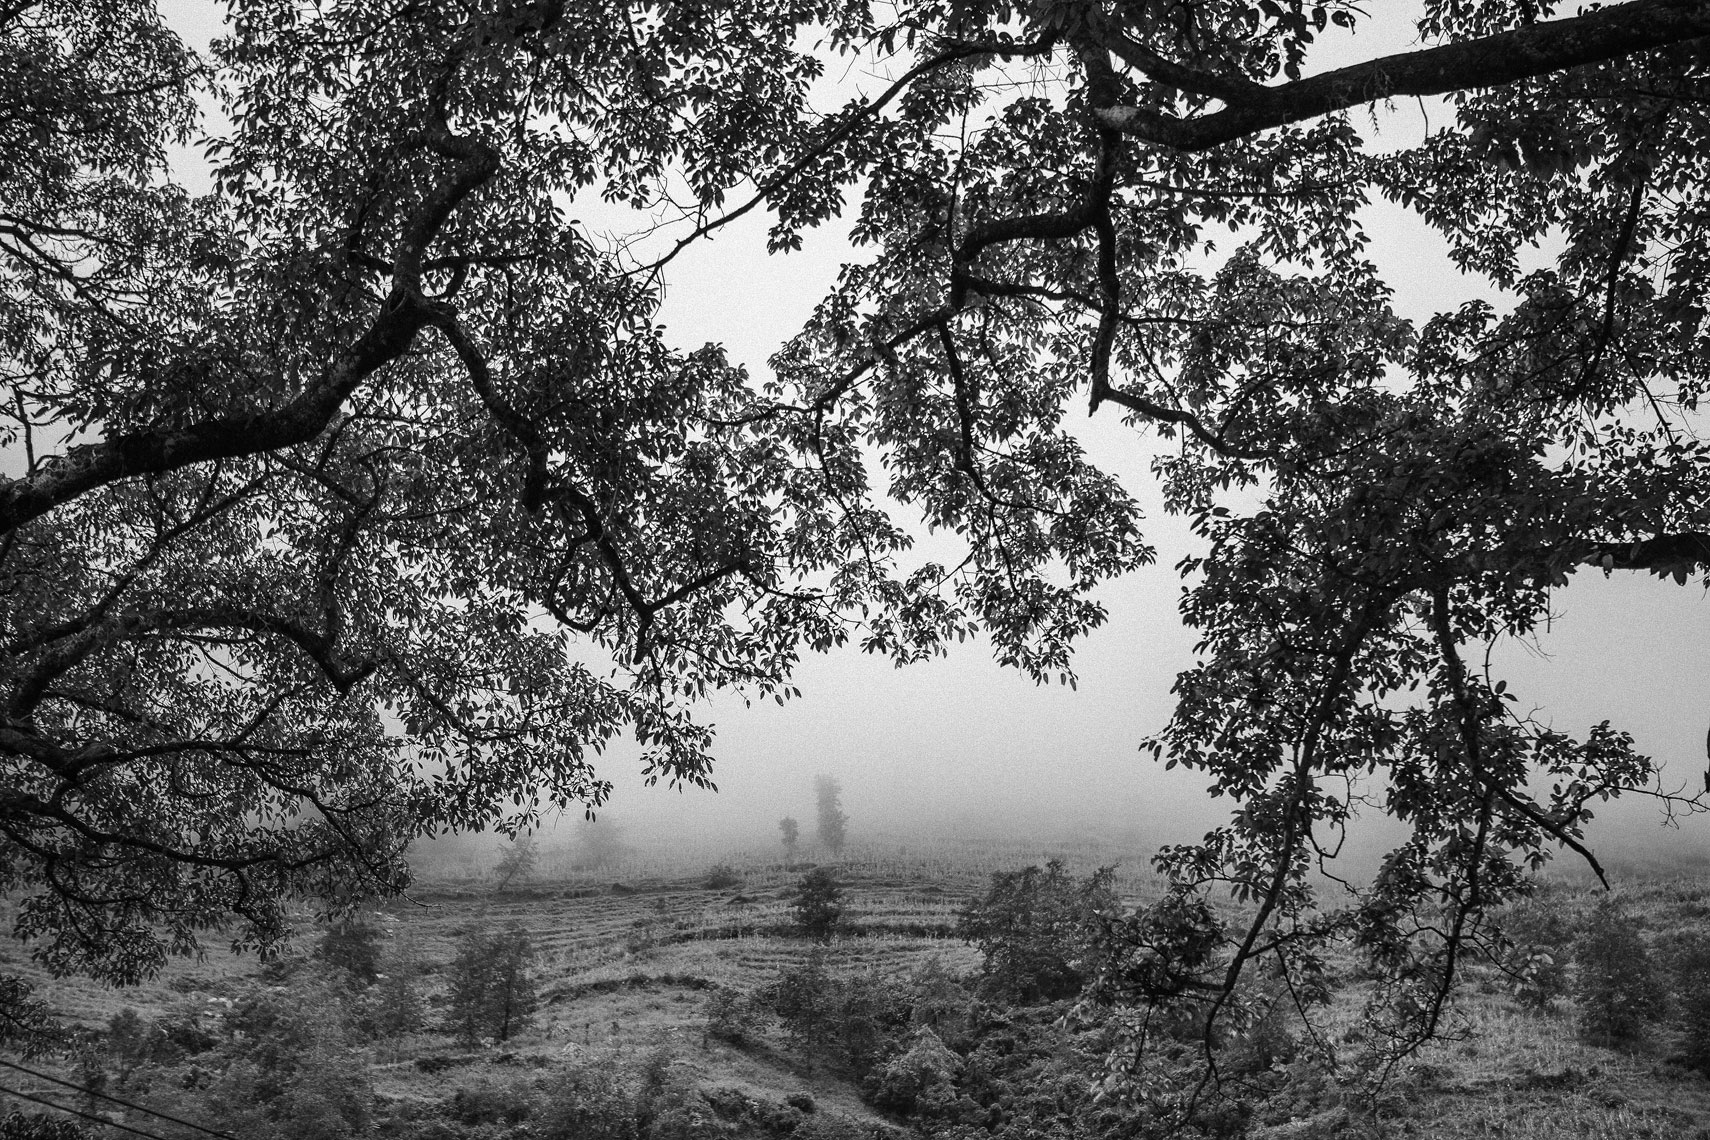 ha-giang-trees-and-fog-print